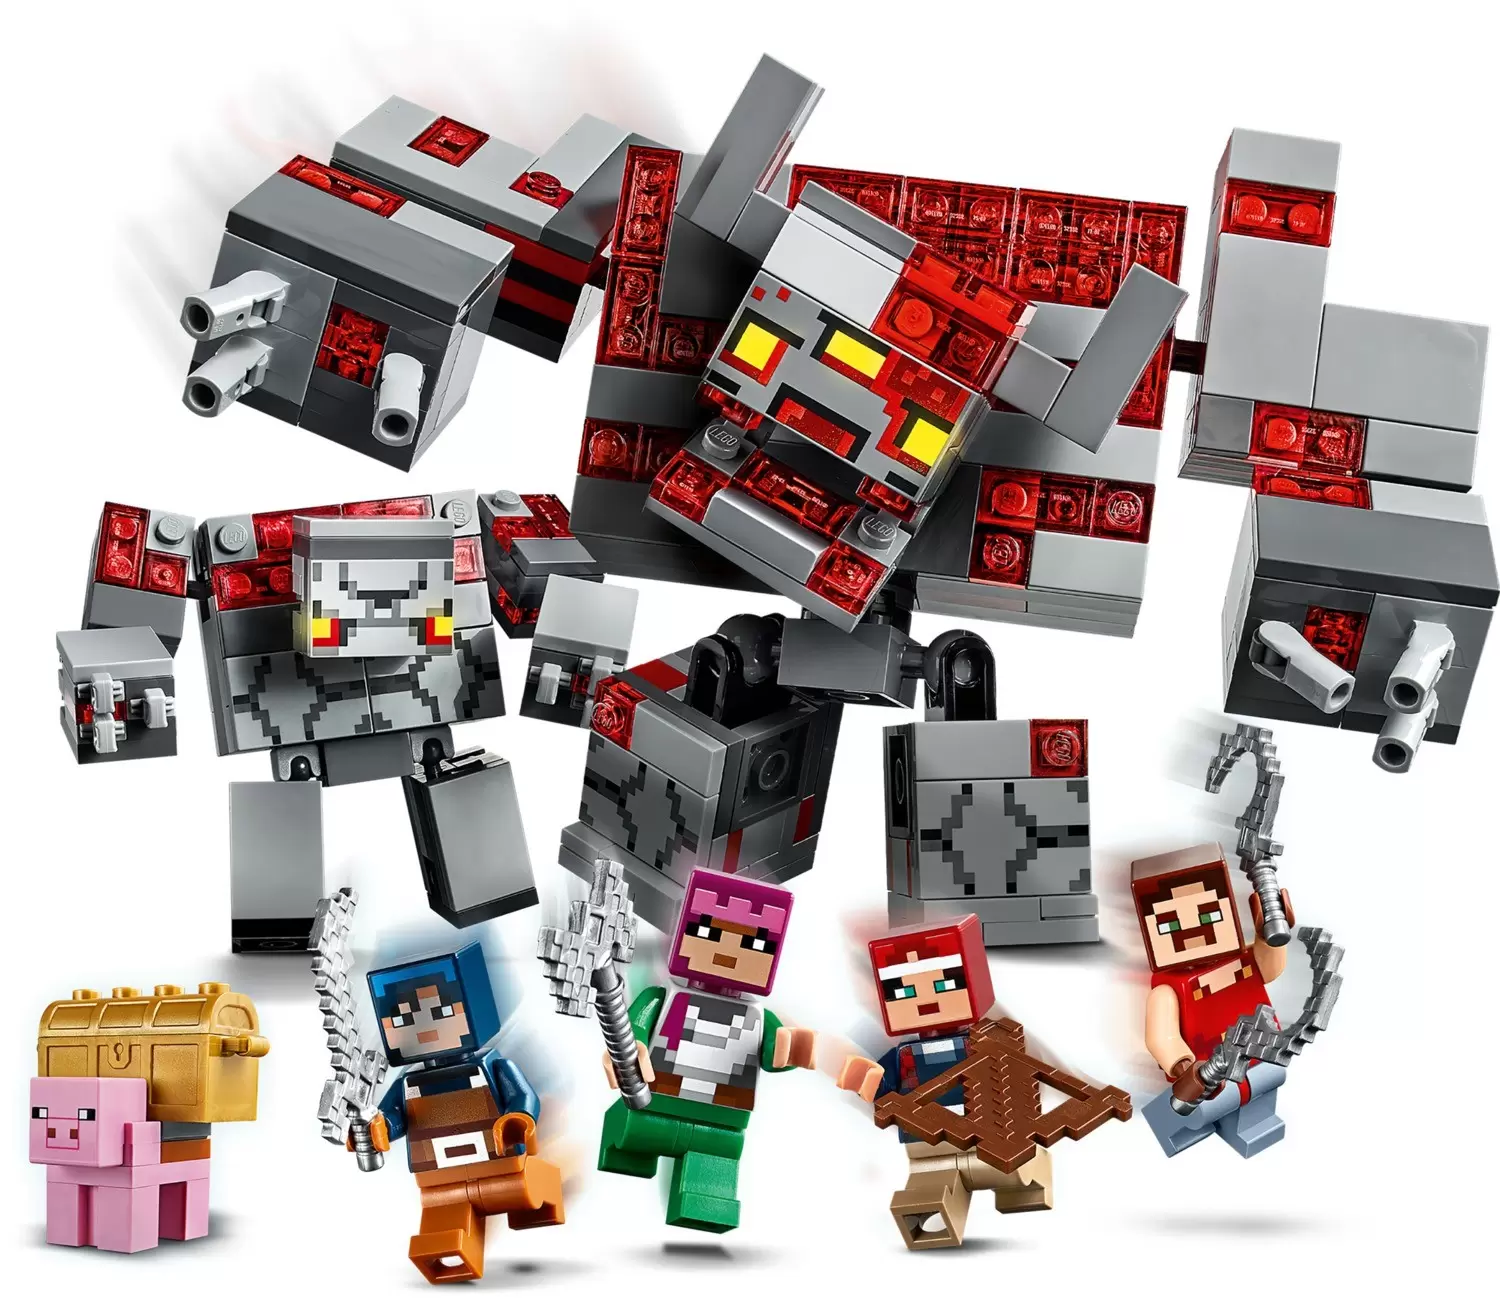 The Redstone Battle Minecraft Dungeons Lego Minecraft Set